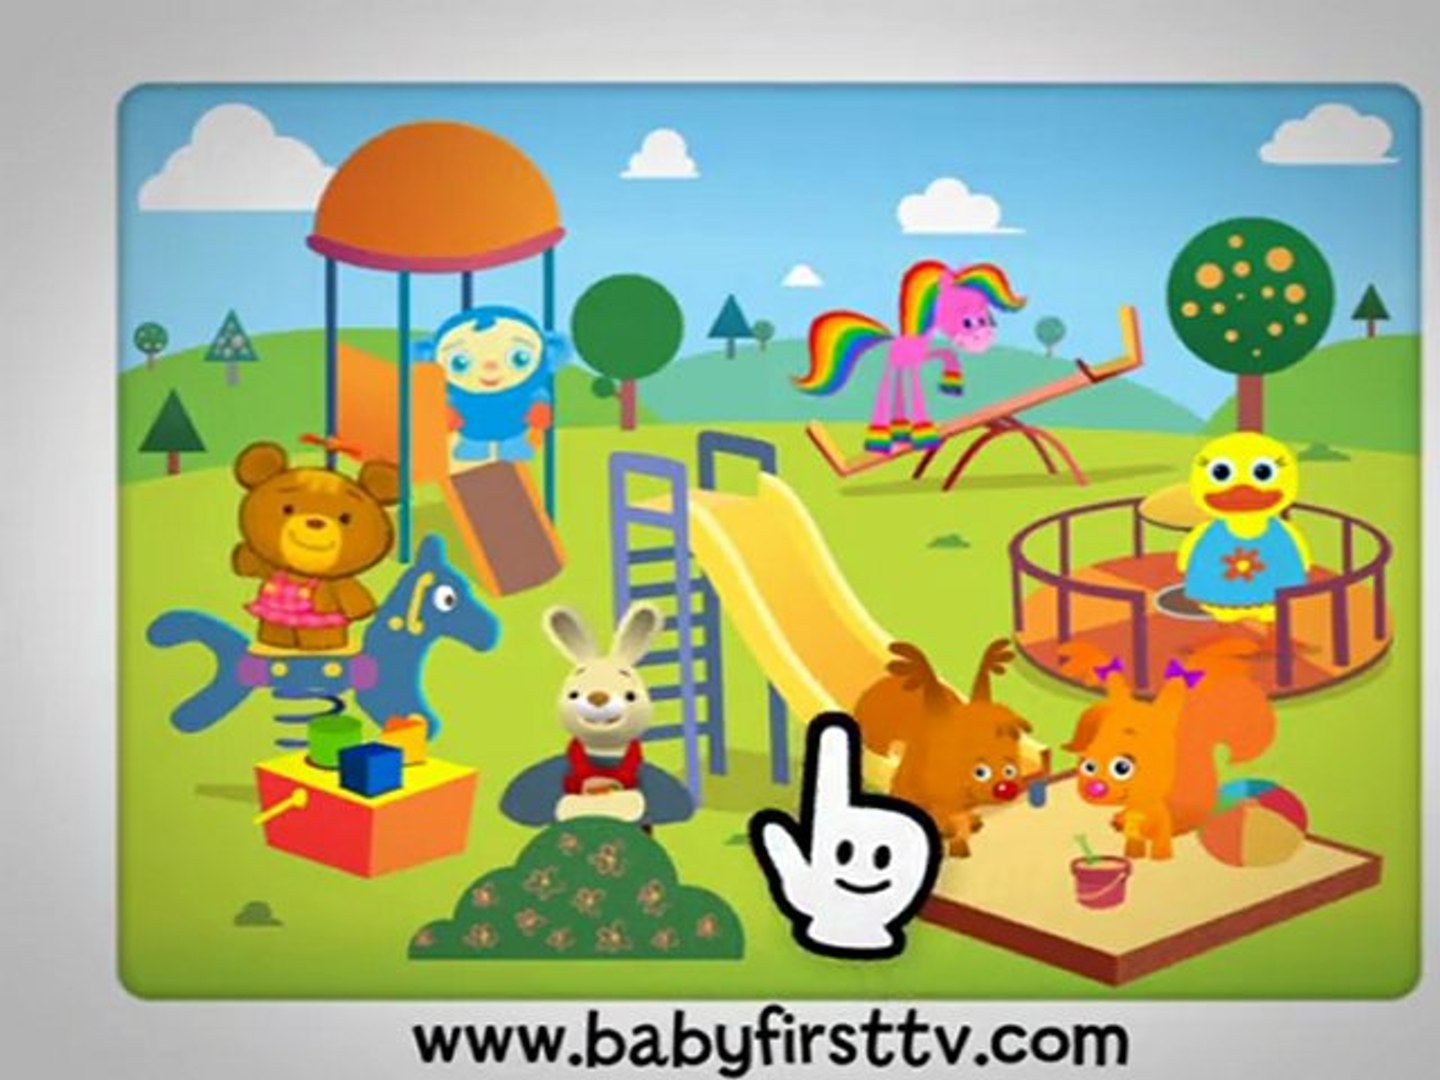 Baby TV Premières Babyfirsttv.com français - video Dailymotion